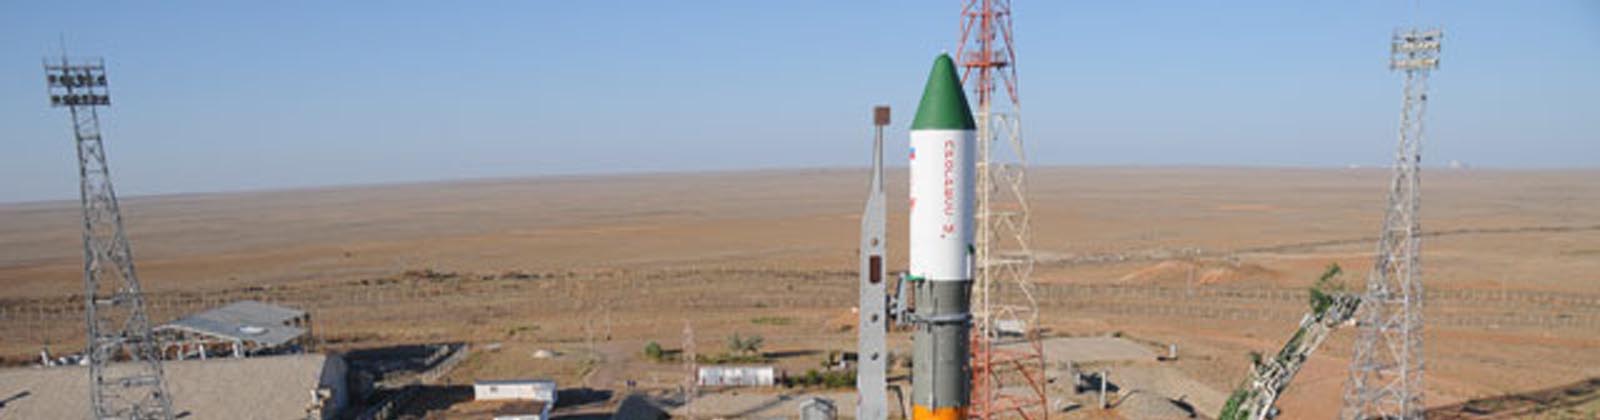 Soyuz avant le lancement de Progress M-7M